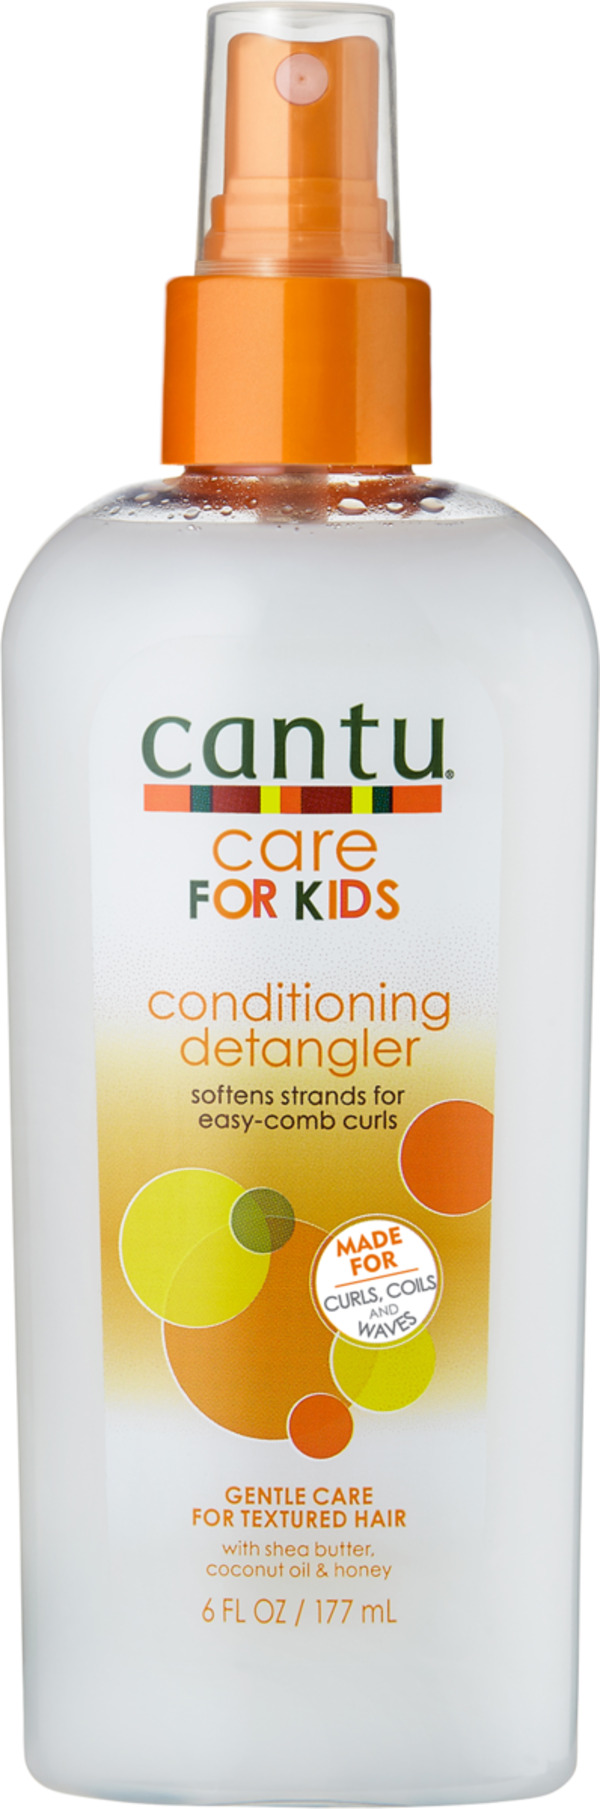 Bild 1 von Cantu Care For Kids Conditioning Detangler